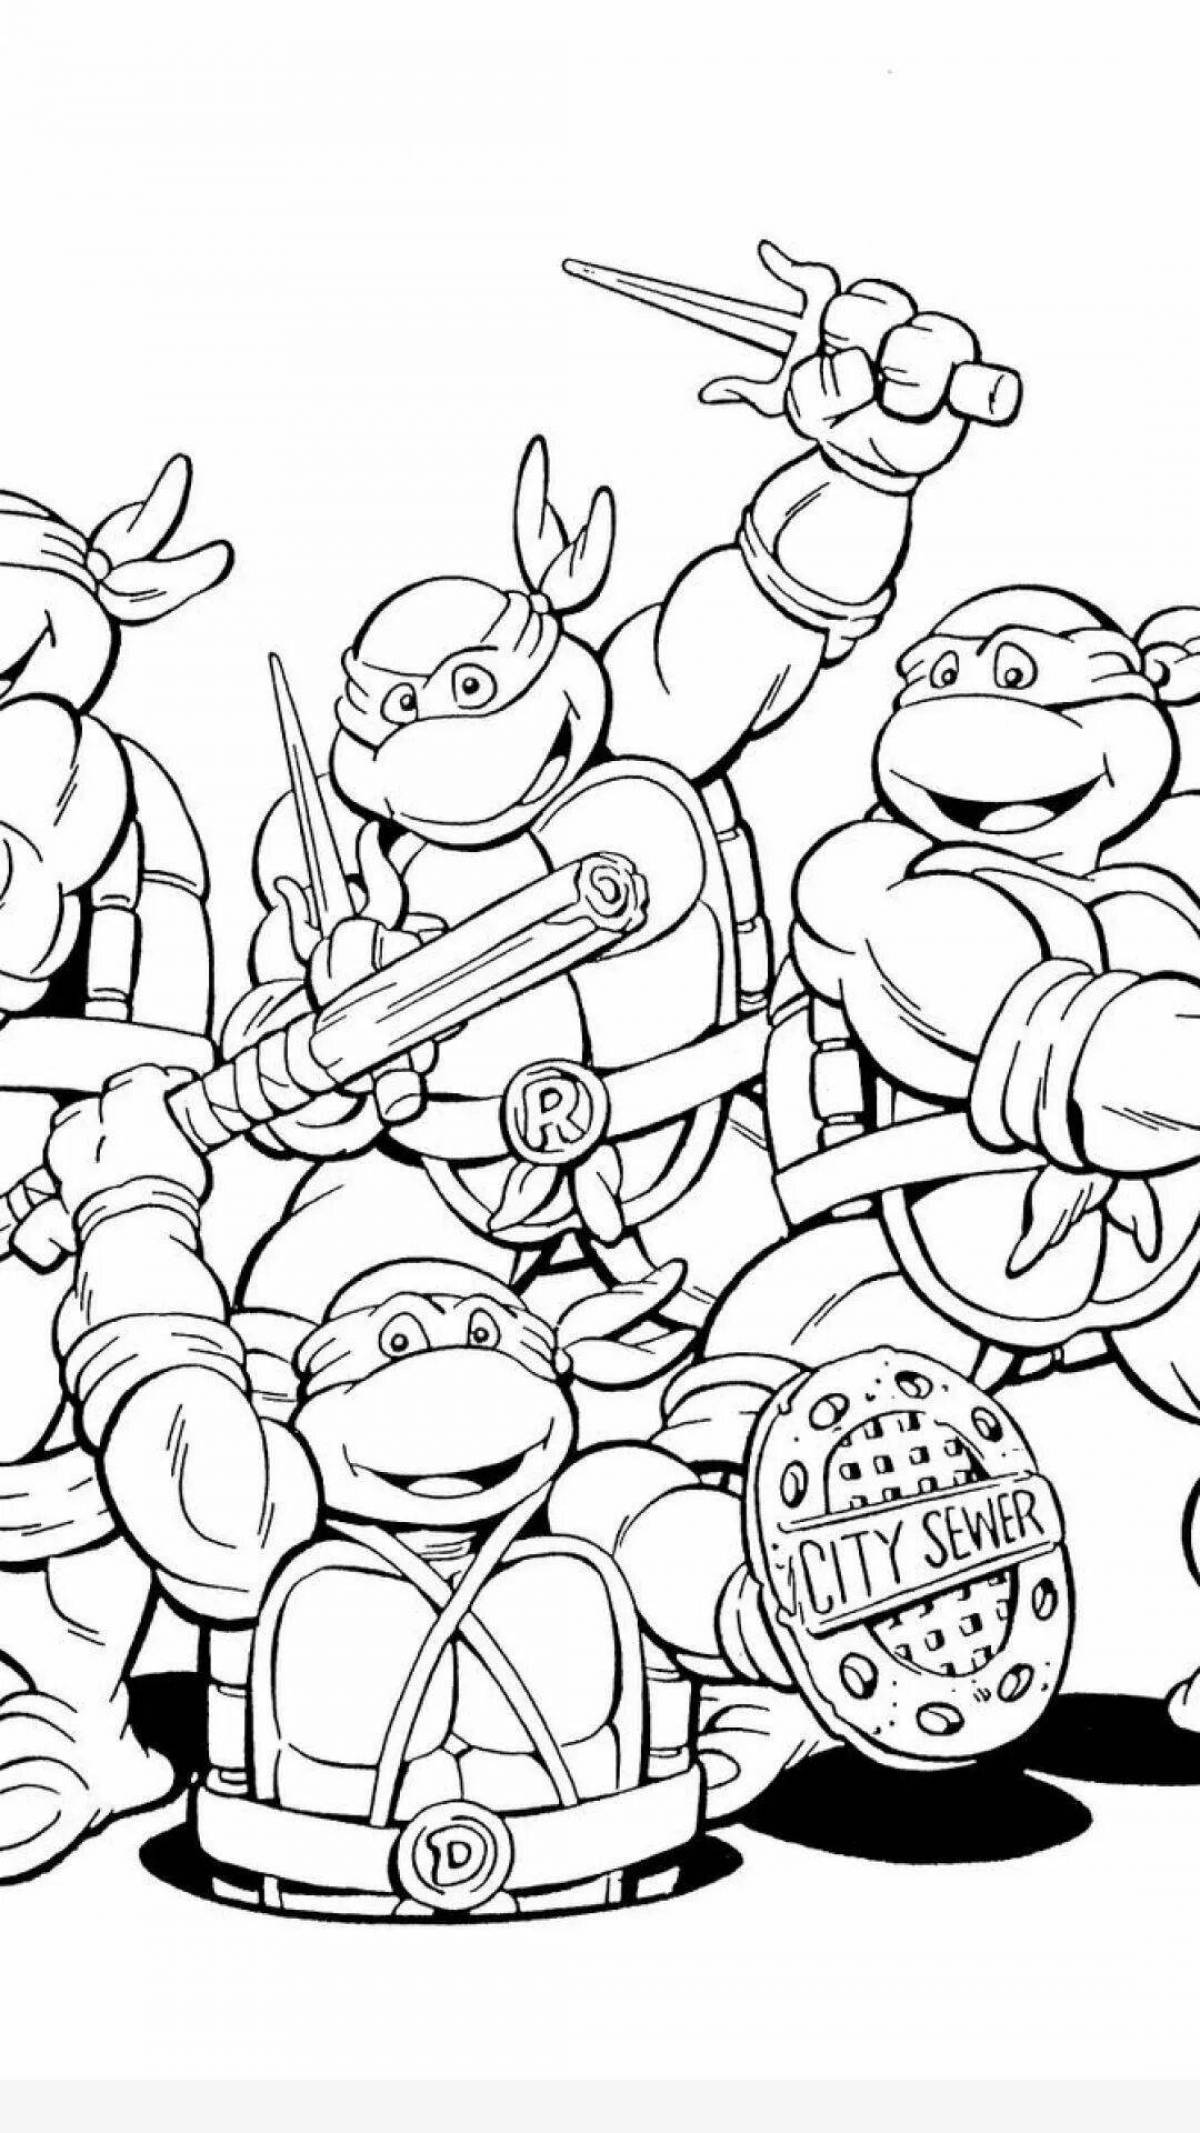 Exciting Teenage Mutant Ninja Turtles 2012 coloring book